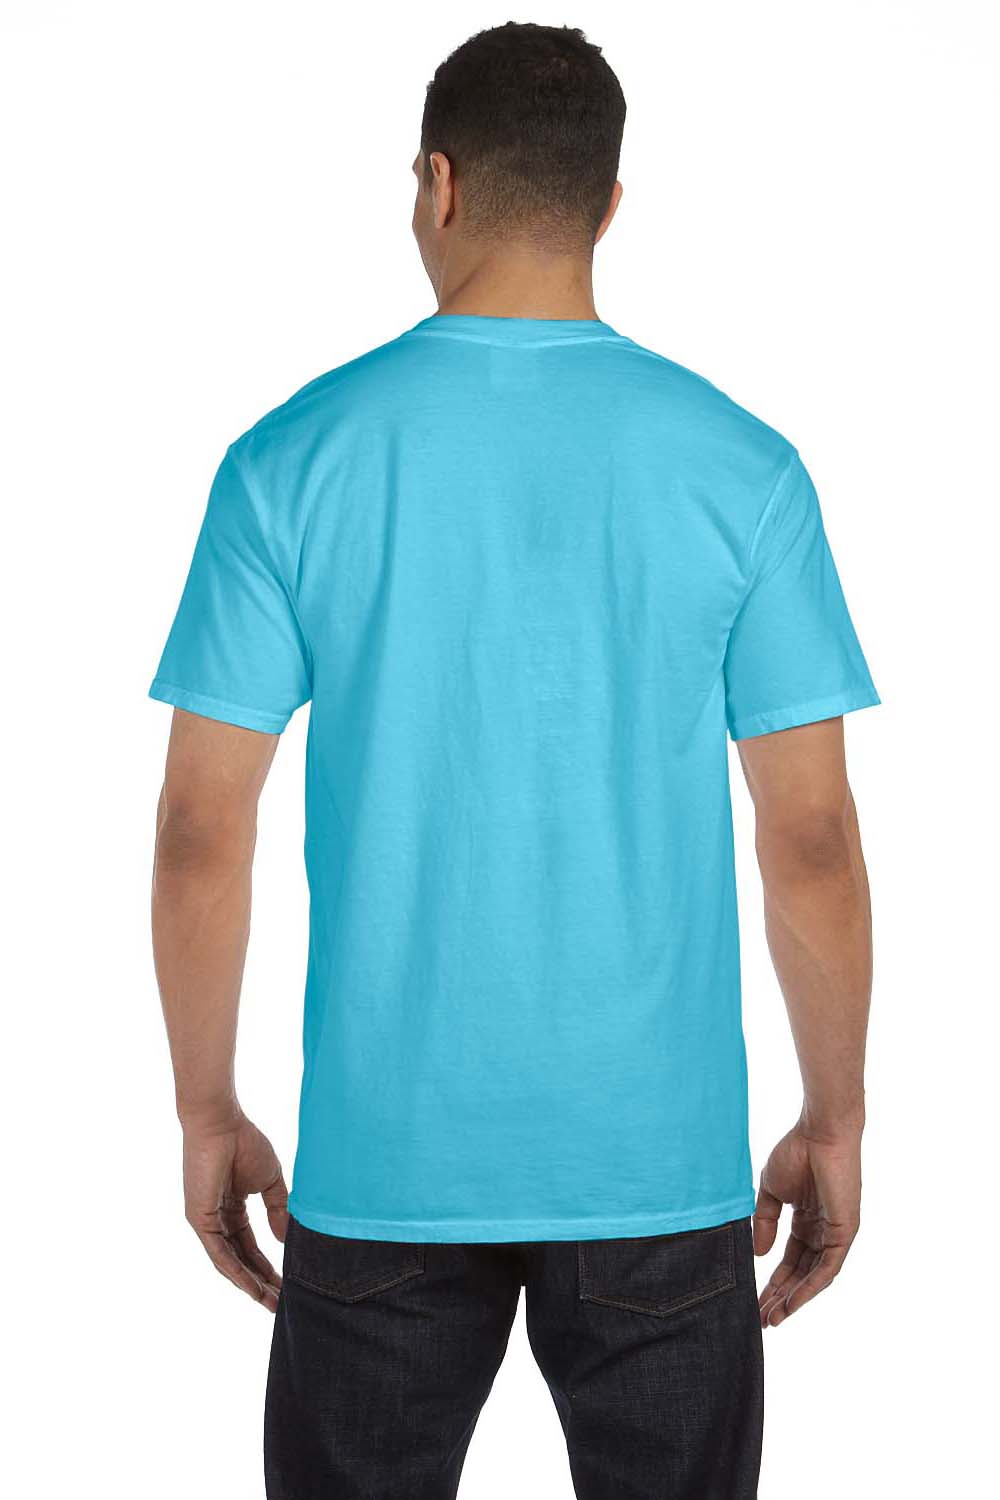 Comfort Colors 6030CC Mens Short Sleeve Crewneck T-Shirt w/ Pocket Lagoon Blue Back